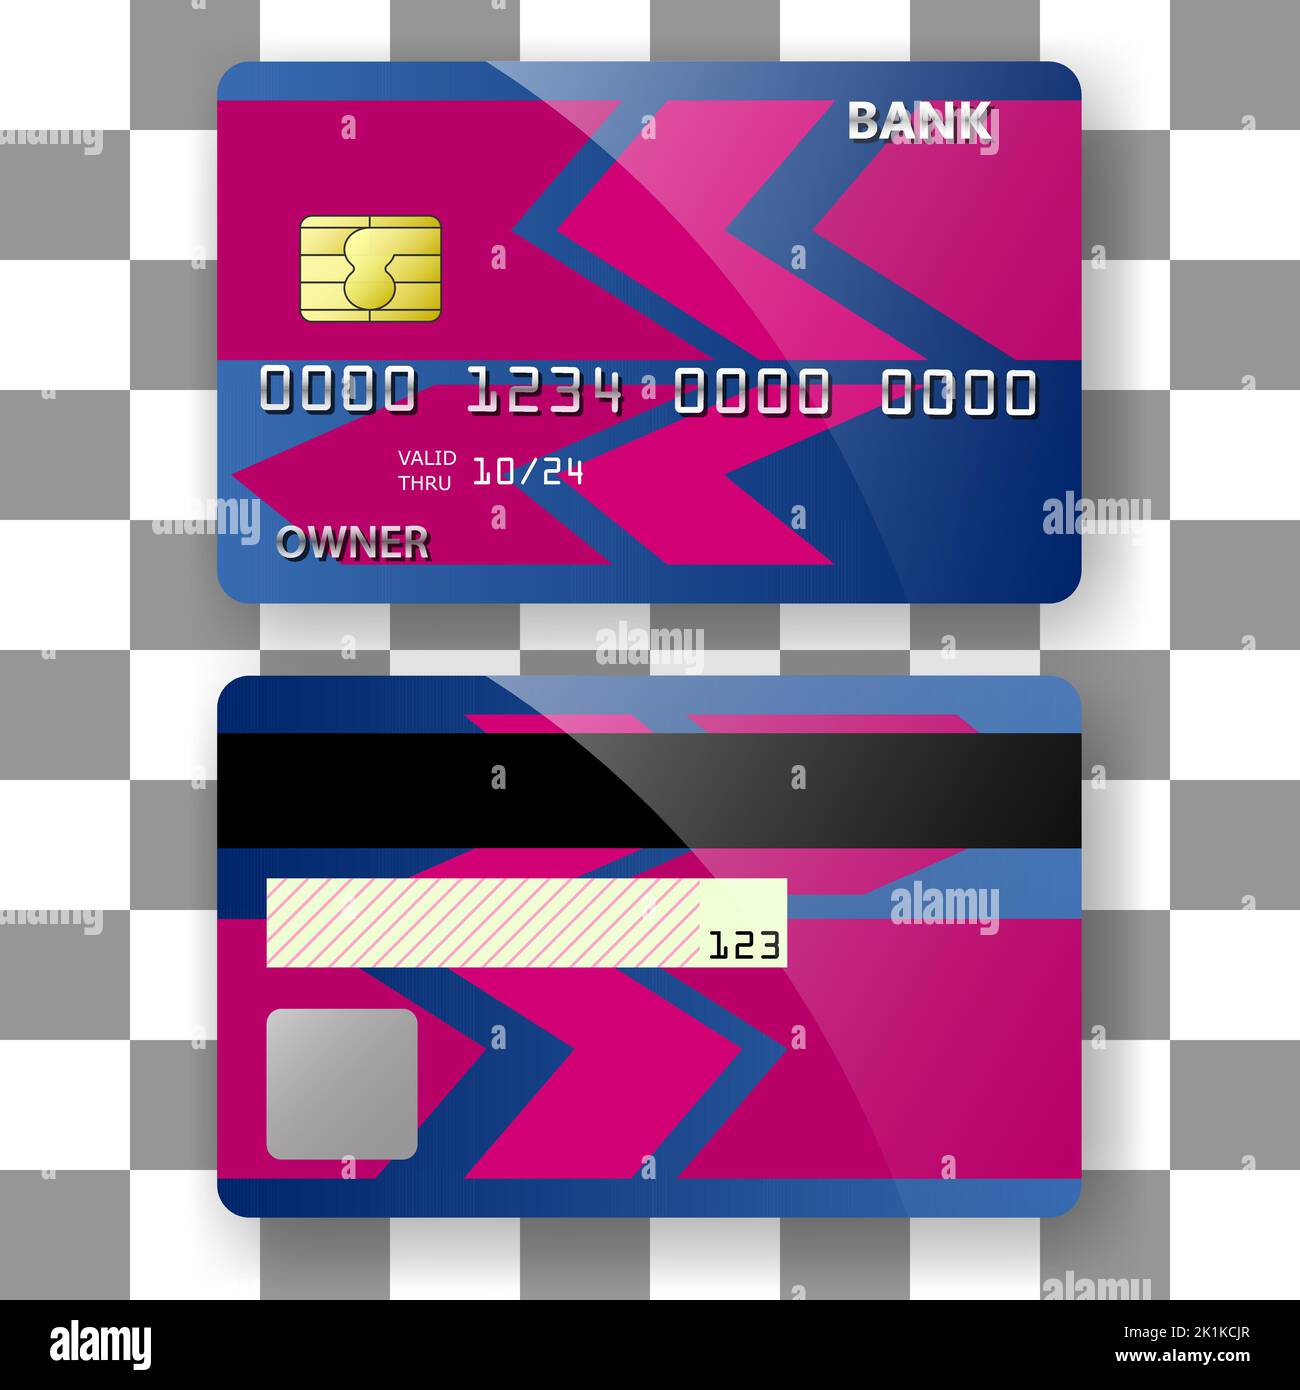 Edles Hintergrunddesign für Bankkartenvorlagen. Vorlage für Poster, Broschüre, Hintergründe usw. Stock Vektor